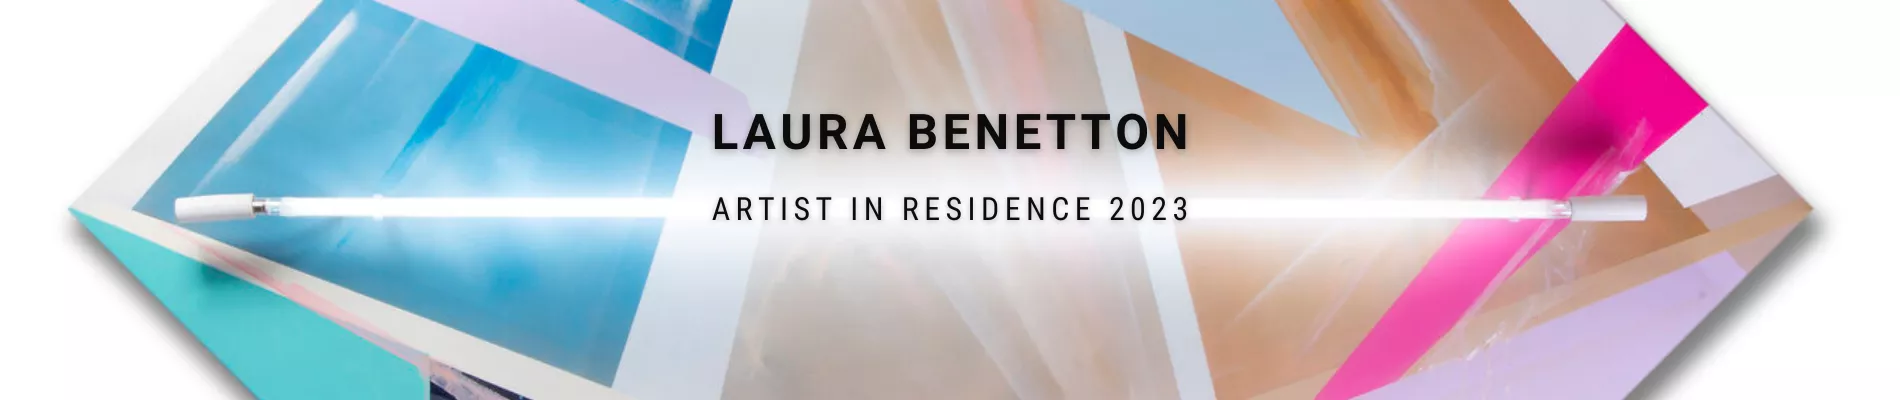 Artist in residence 2023